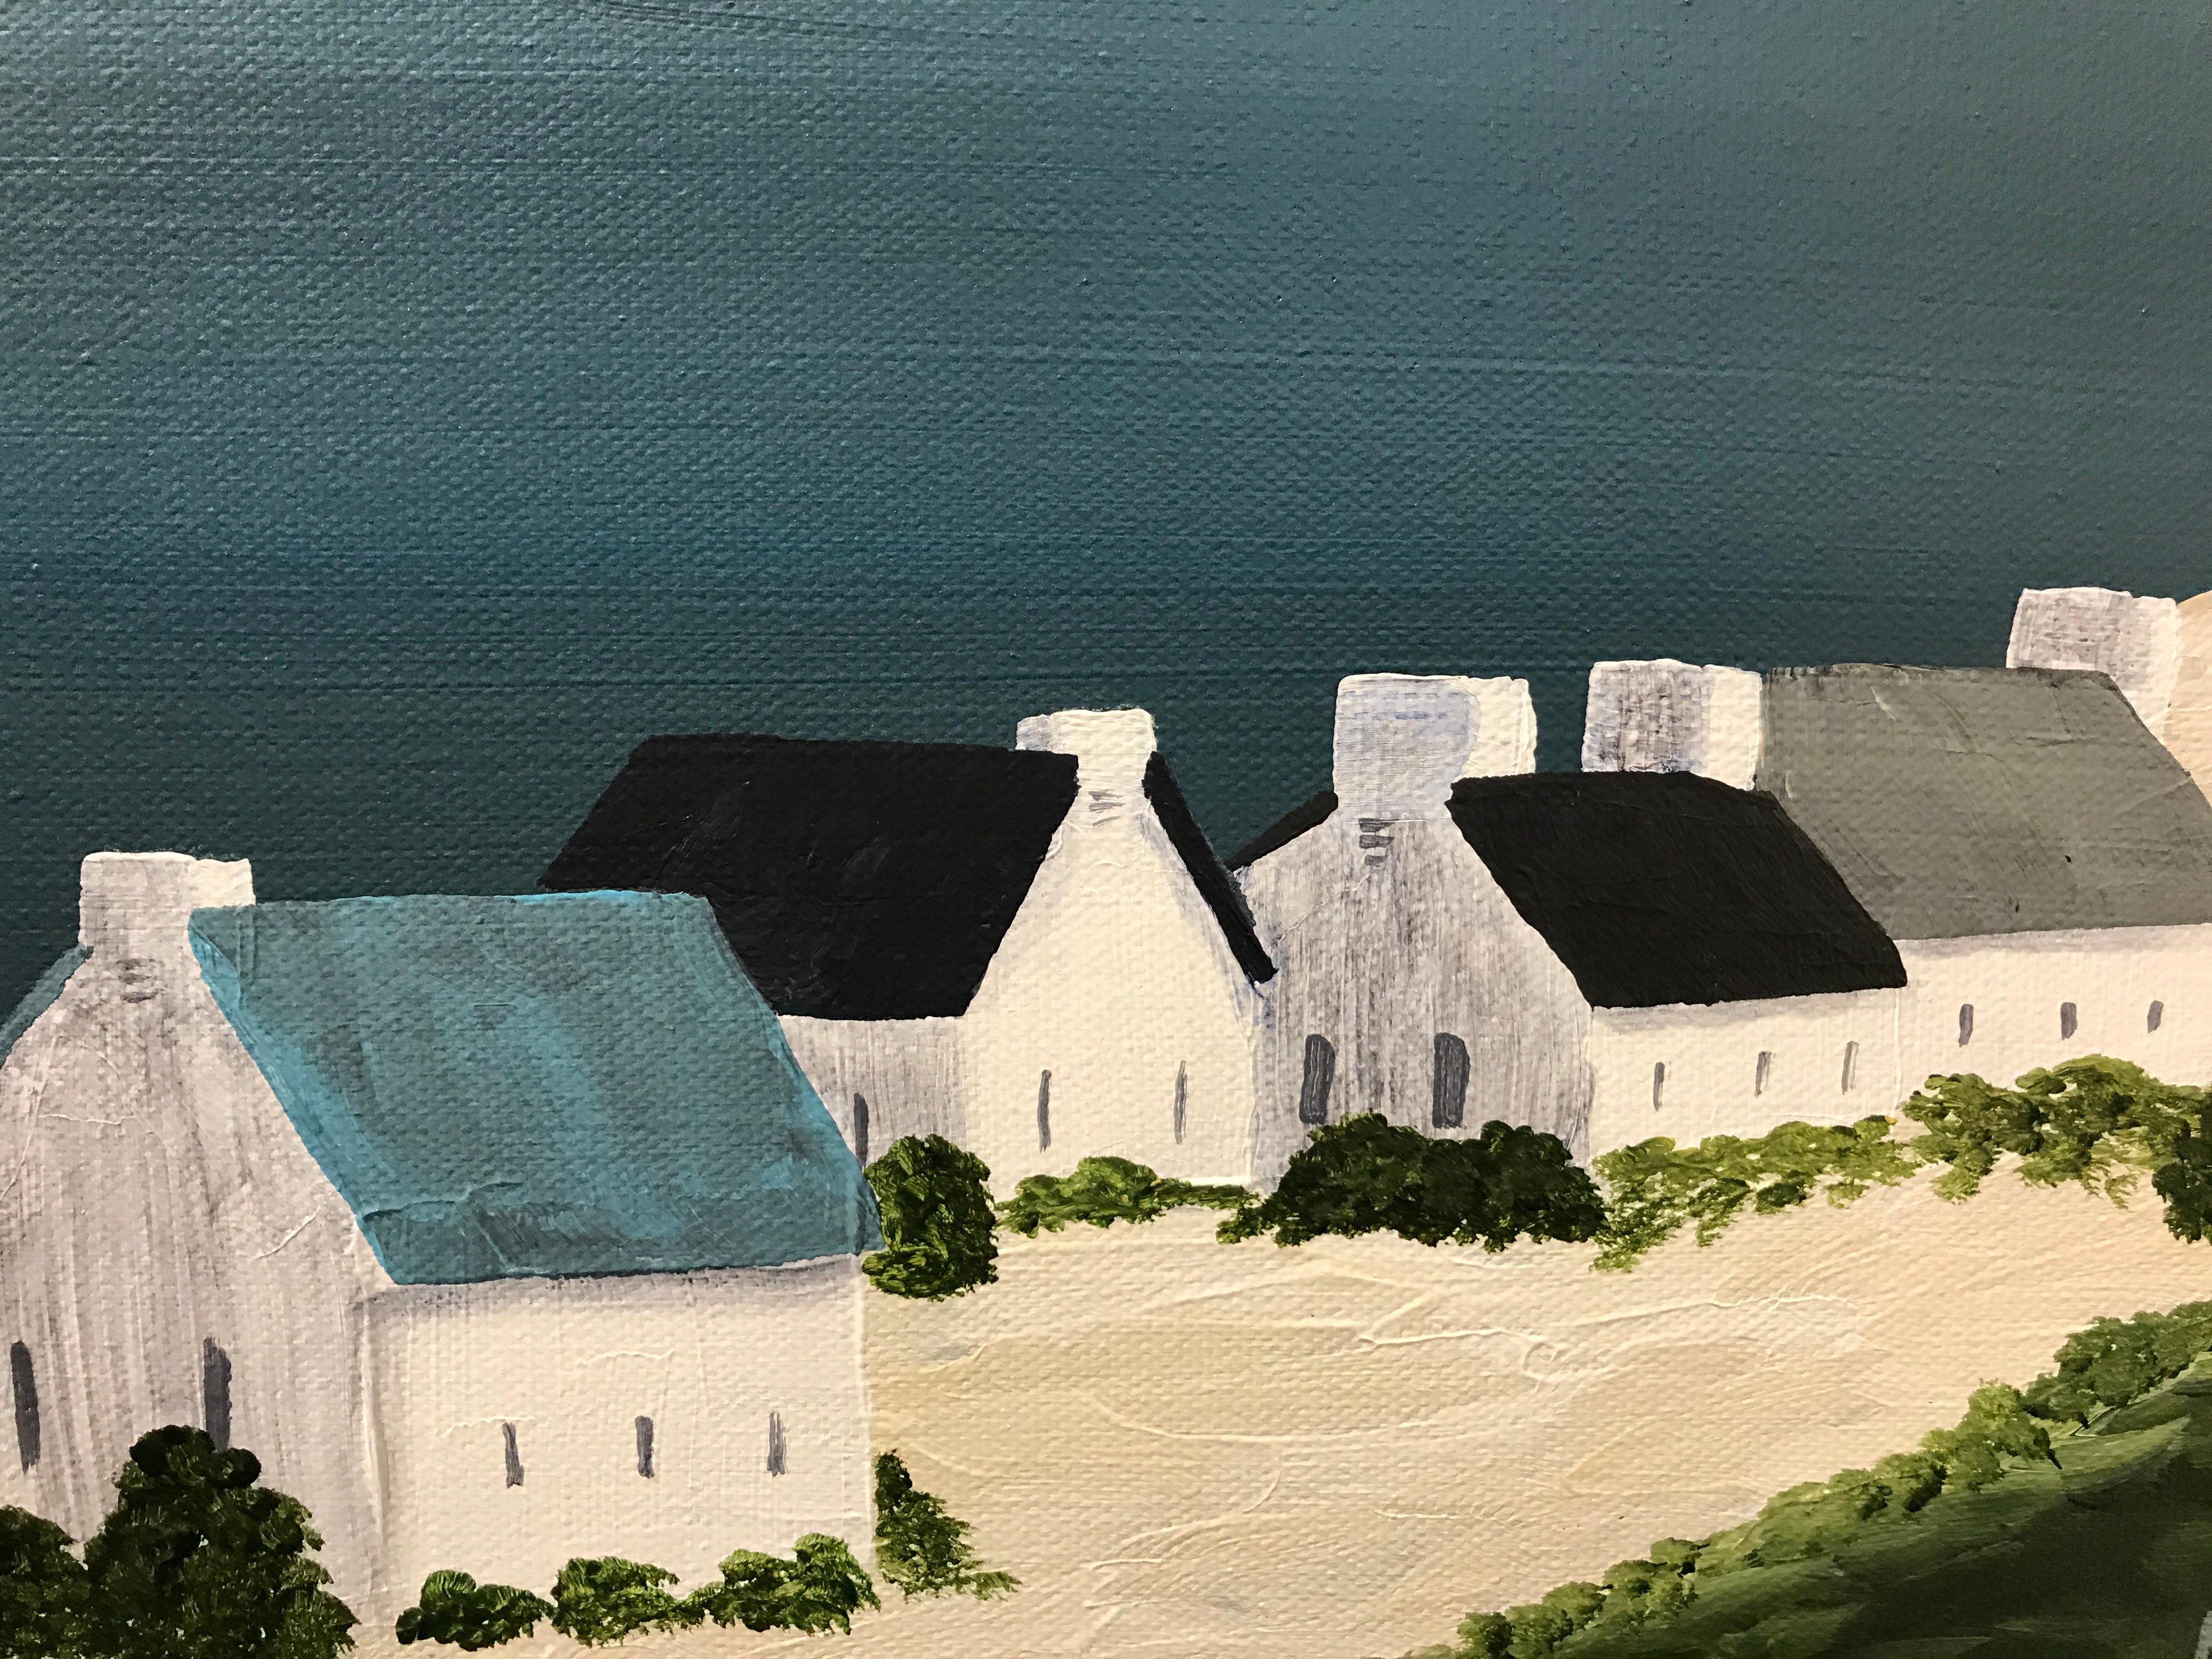 Village of Joy, Susan Kinsella Contemporary Acrylic Coastal Landscape Painting 5